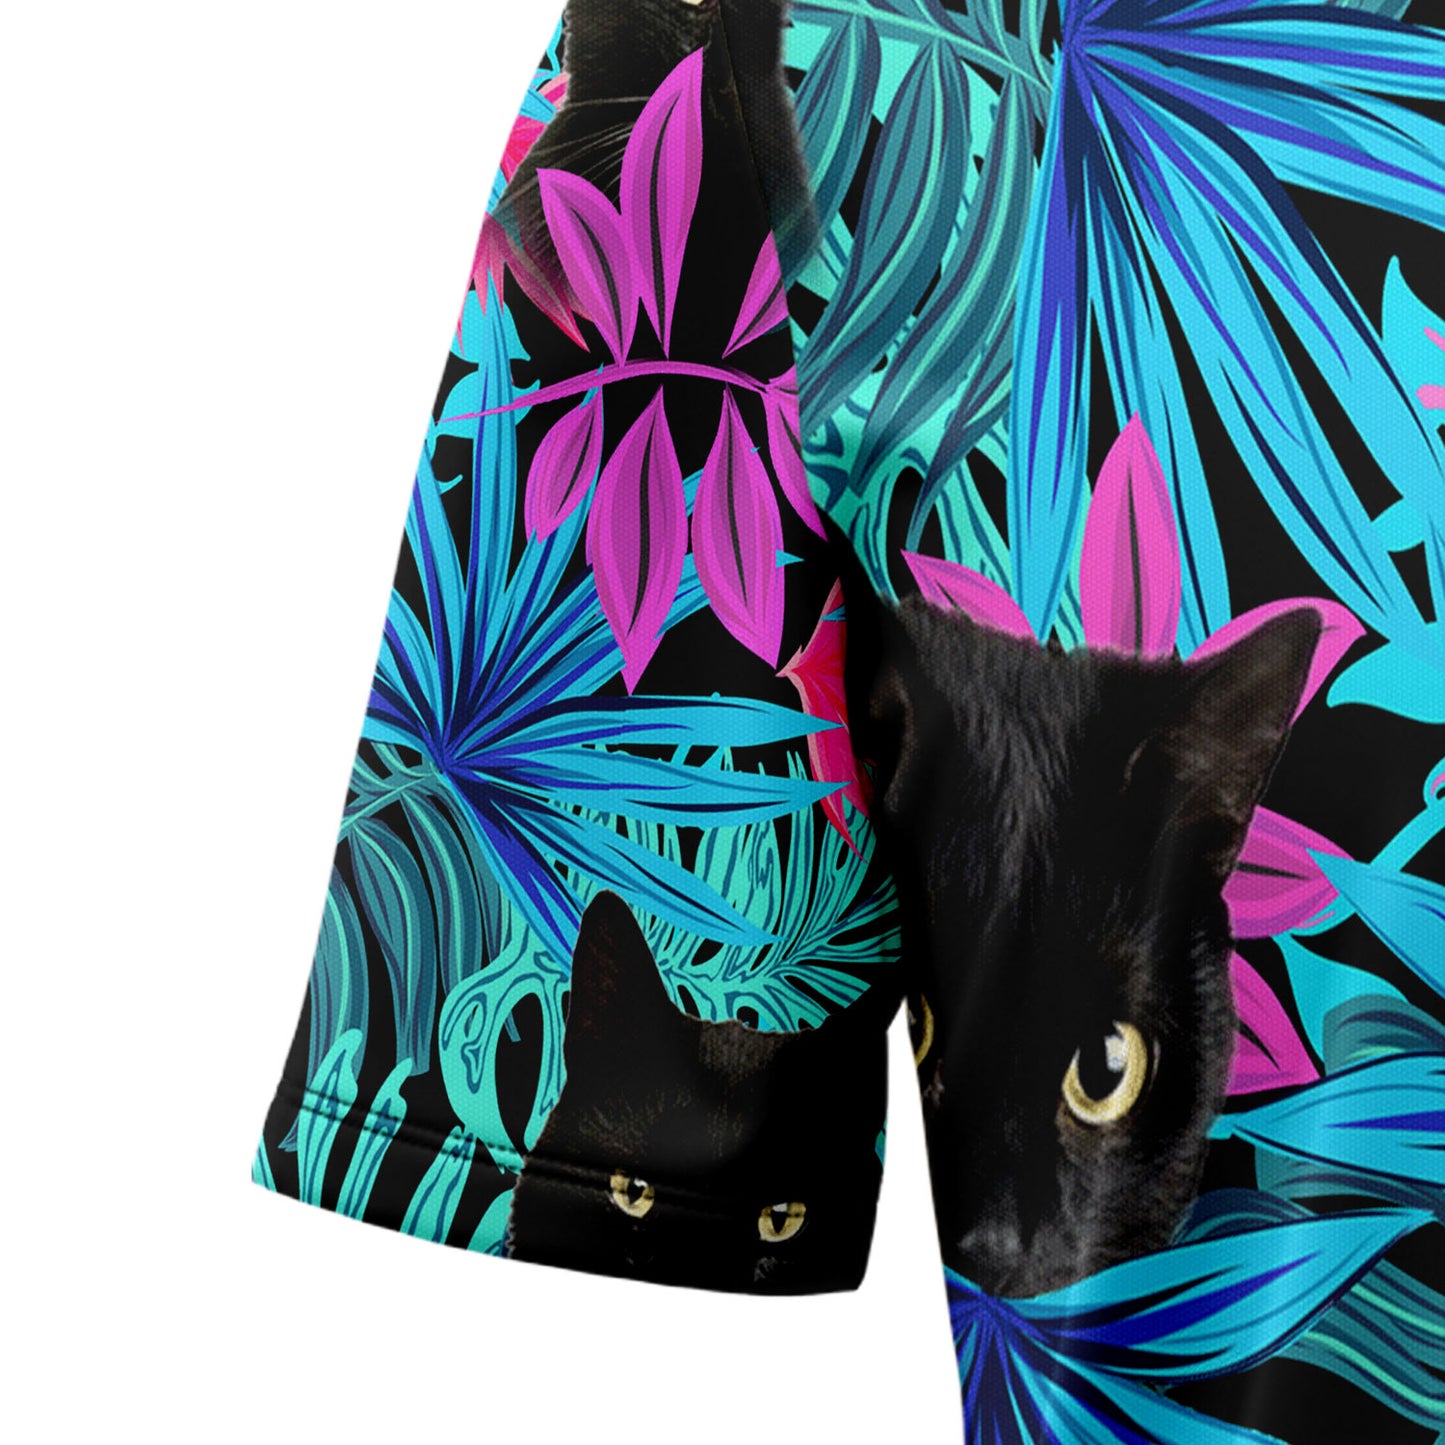 Black Cat Tropical Leaves G5706 Hawaiian Shirt